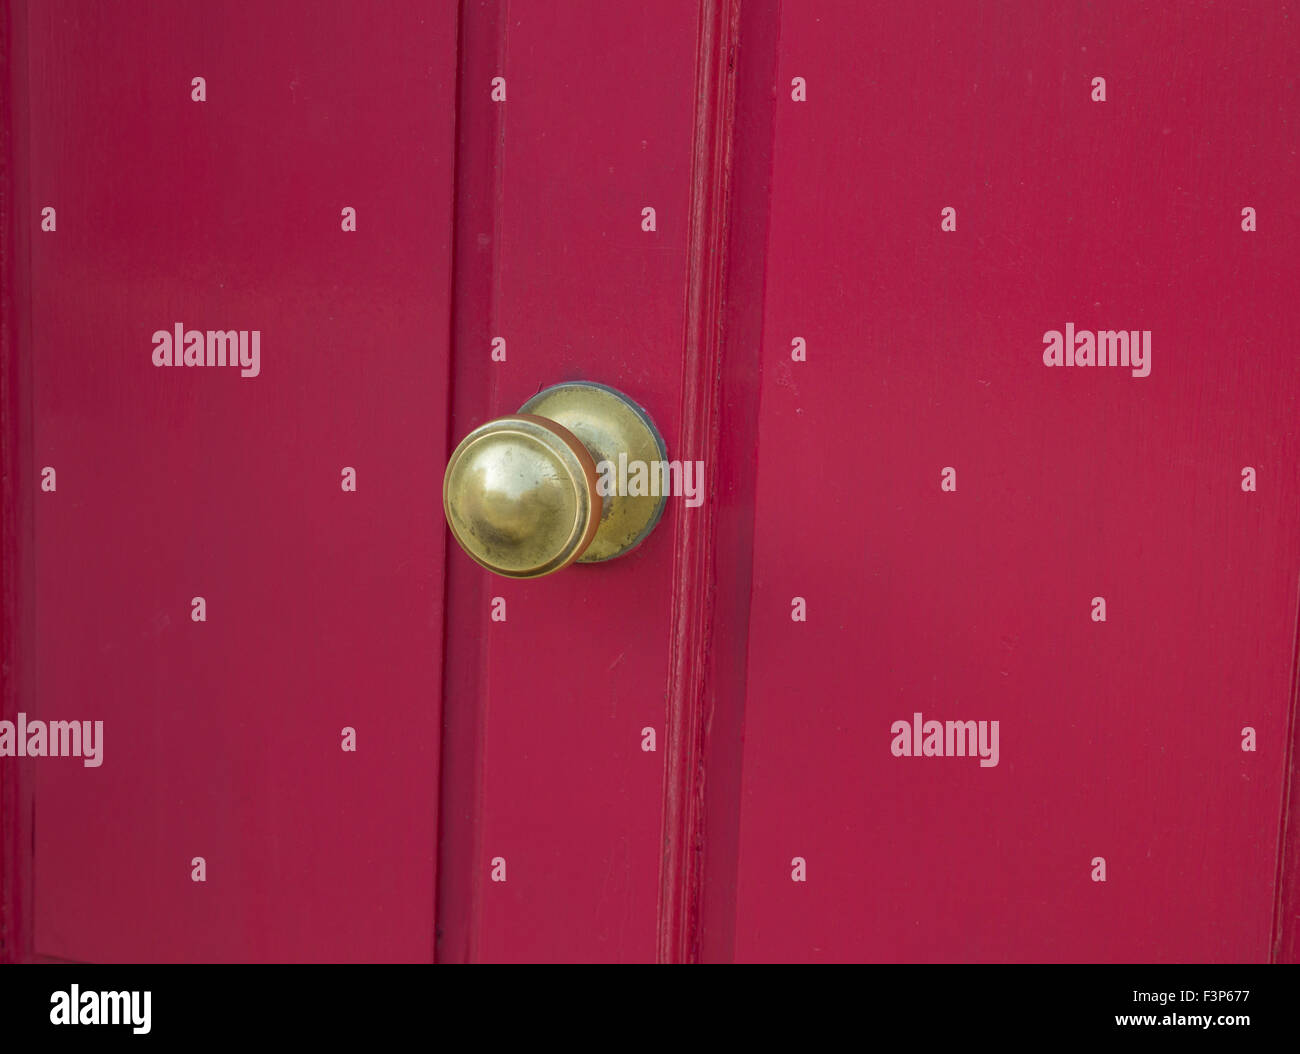 Brass door furniture on a pinky red door Stock Photo